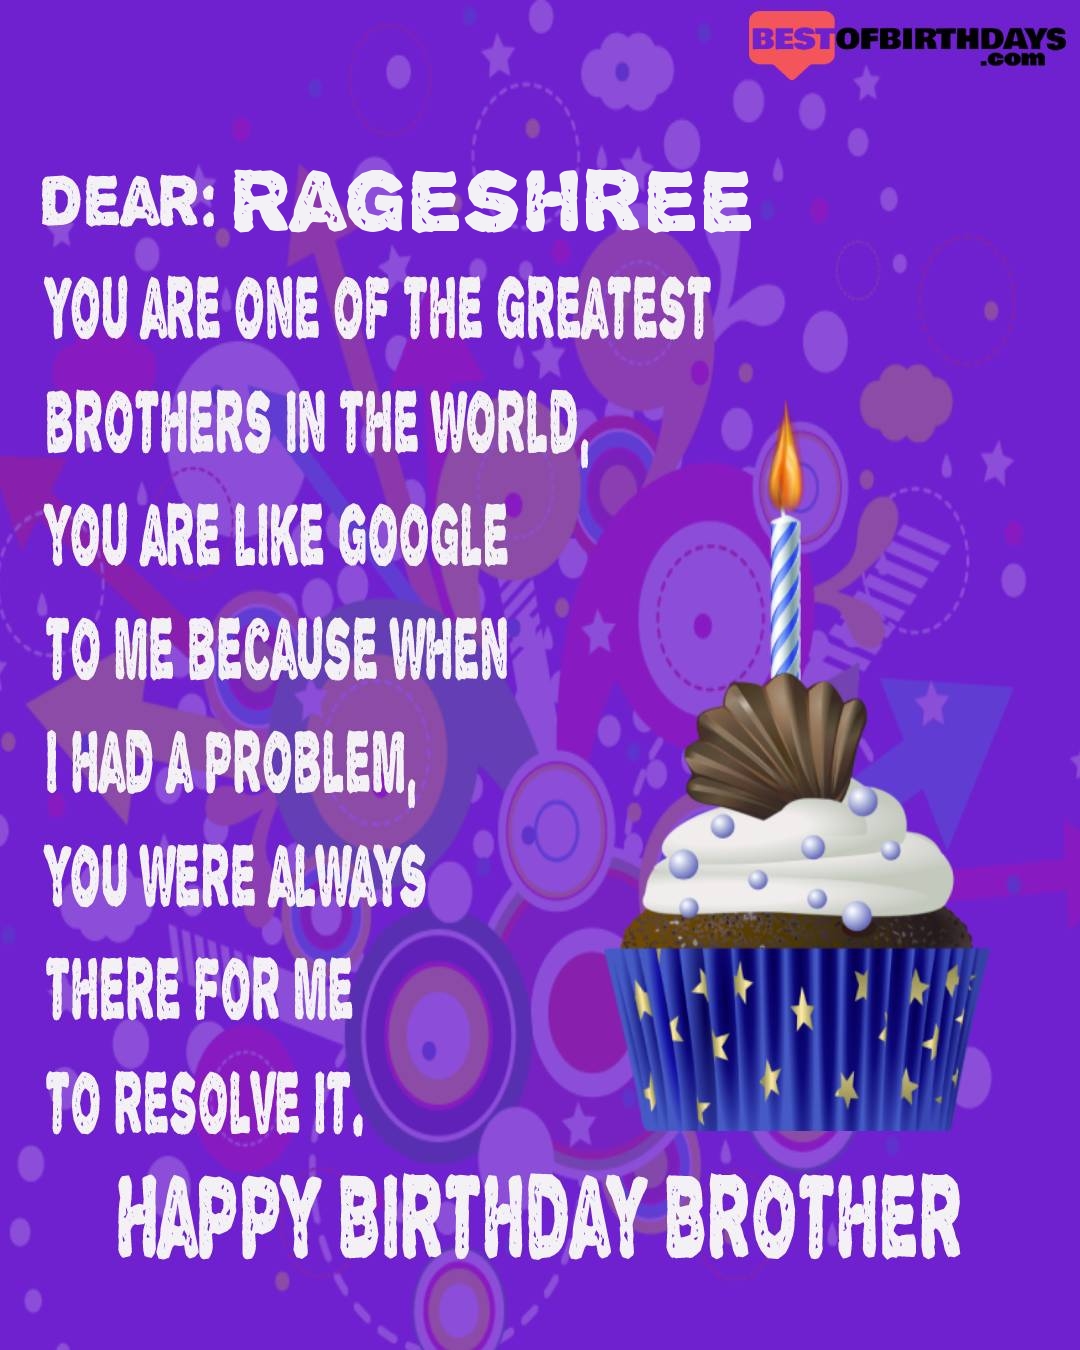 Happy birthday rageshree bhai brother bro